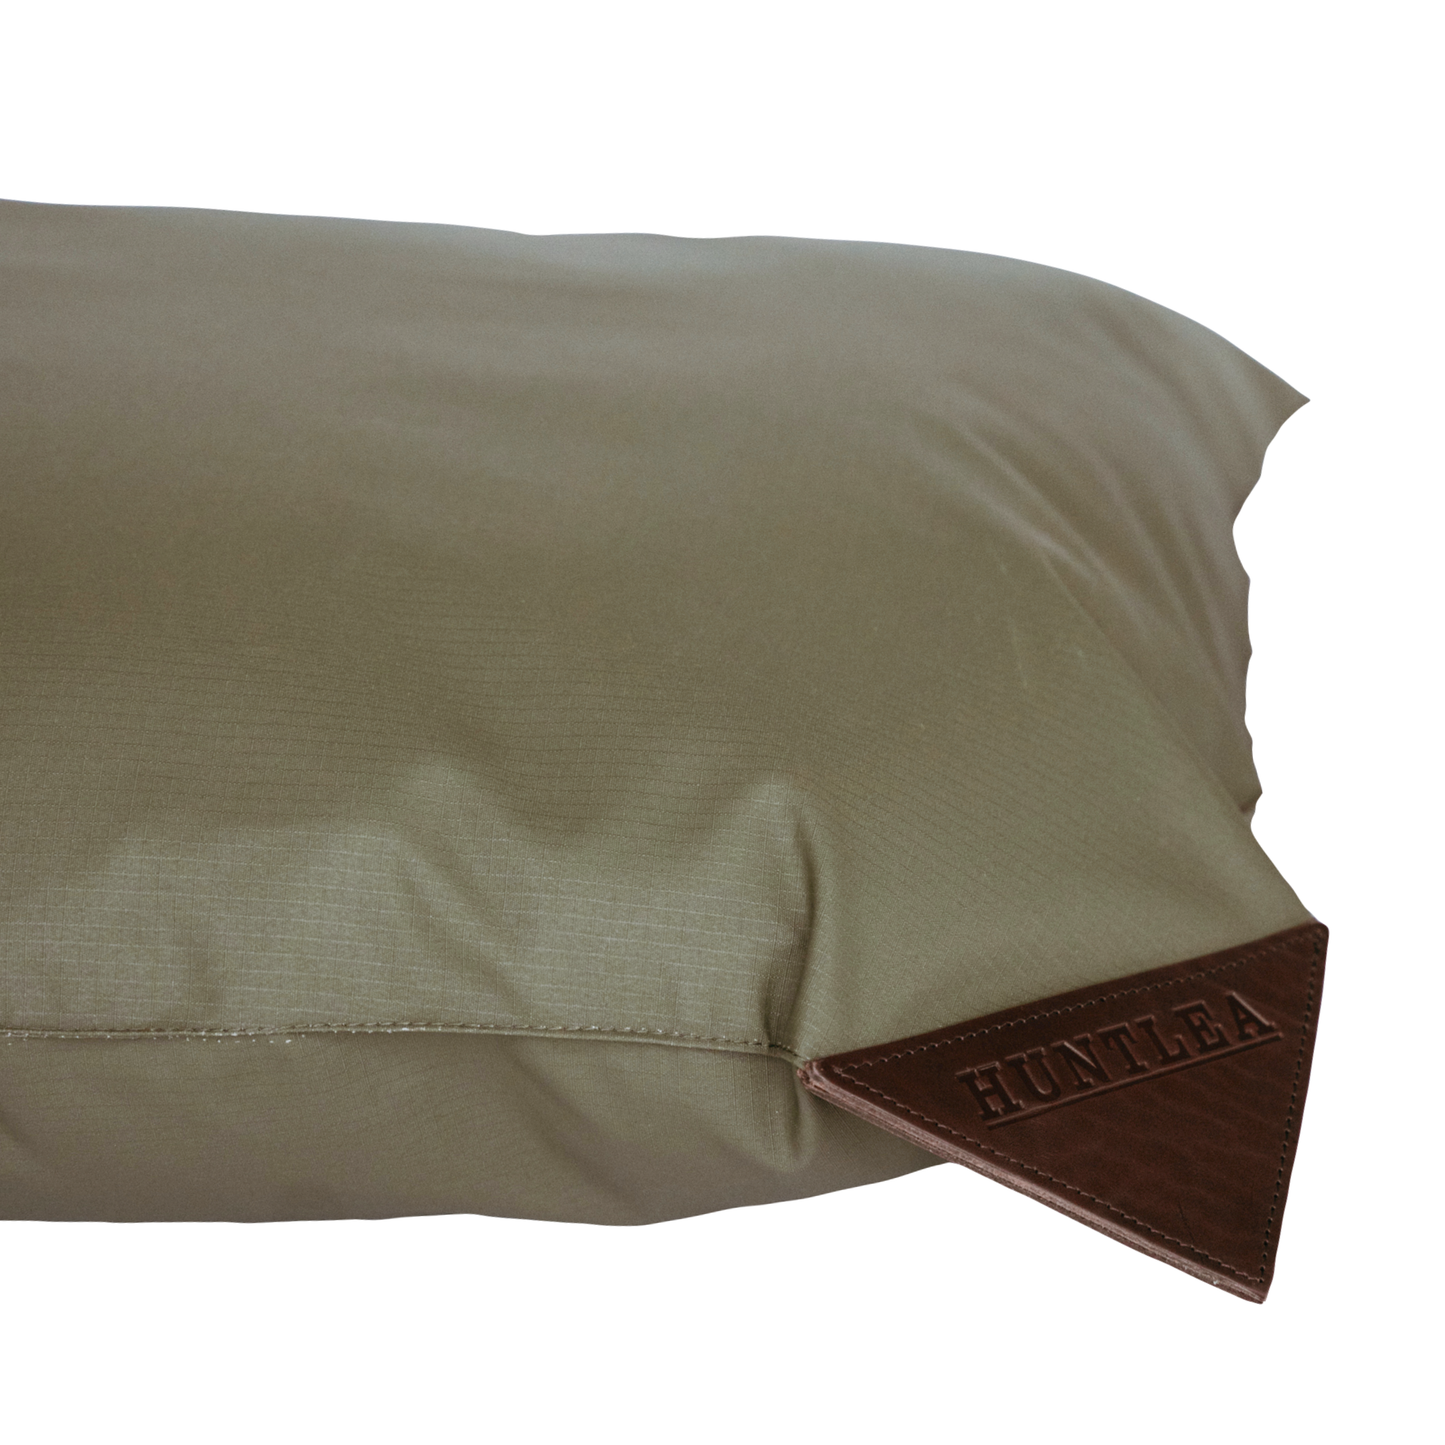 Huntlea Kalahari Pillow Dog Bed